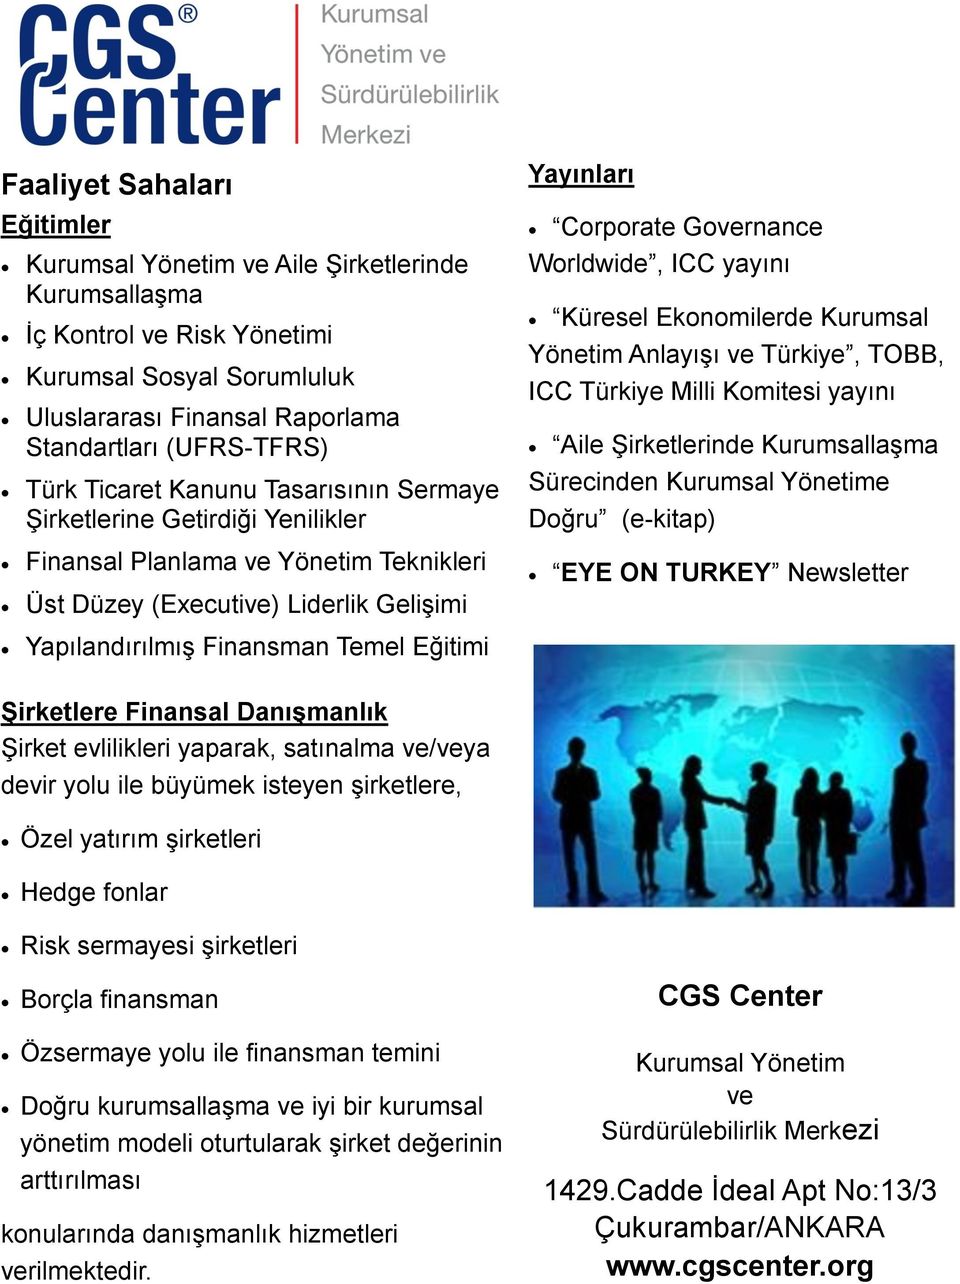 yayını Küresel Ekonomilerde Kurumsal Yönetim Anlayışı ve Türkiye, TOBB, ICC Türkiye Milli Komitesi yayını Aile Şirketlerinde Kurumsallaşma Sürecinden Kurumsal Yönetime Doğru (e-kitap) EYE ON TURKEY